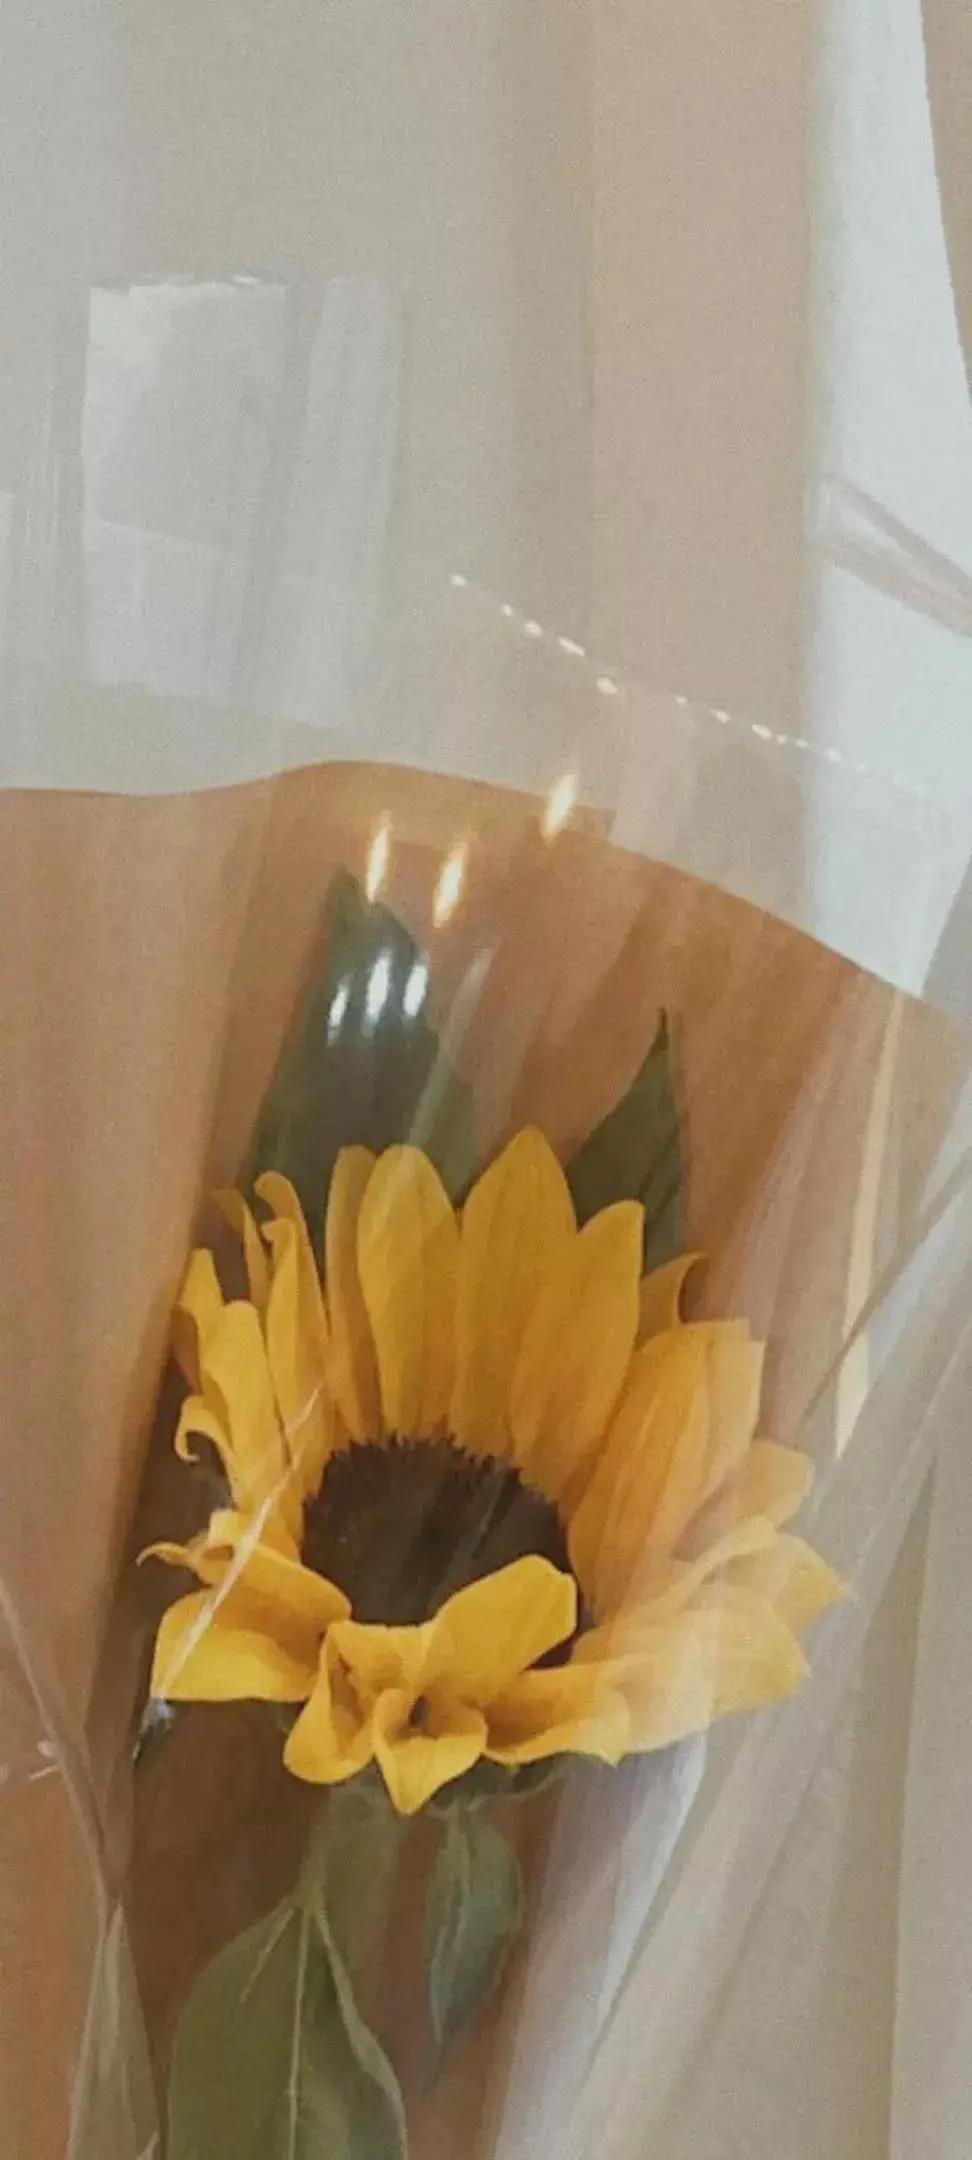 每天都有好心情黄色花朵唯美高清手机壁纸图片